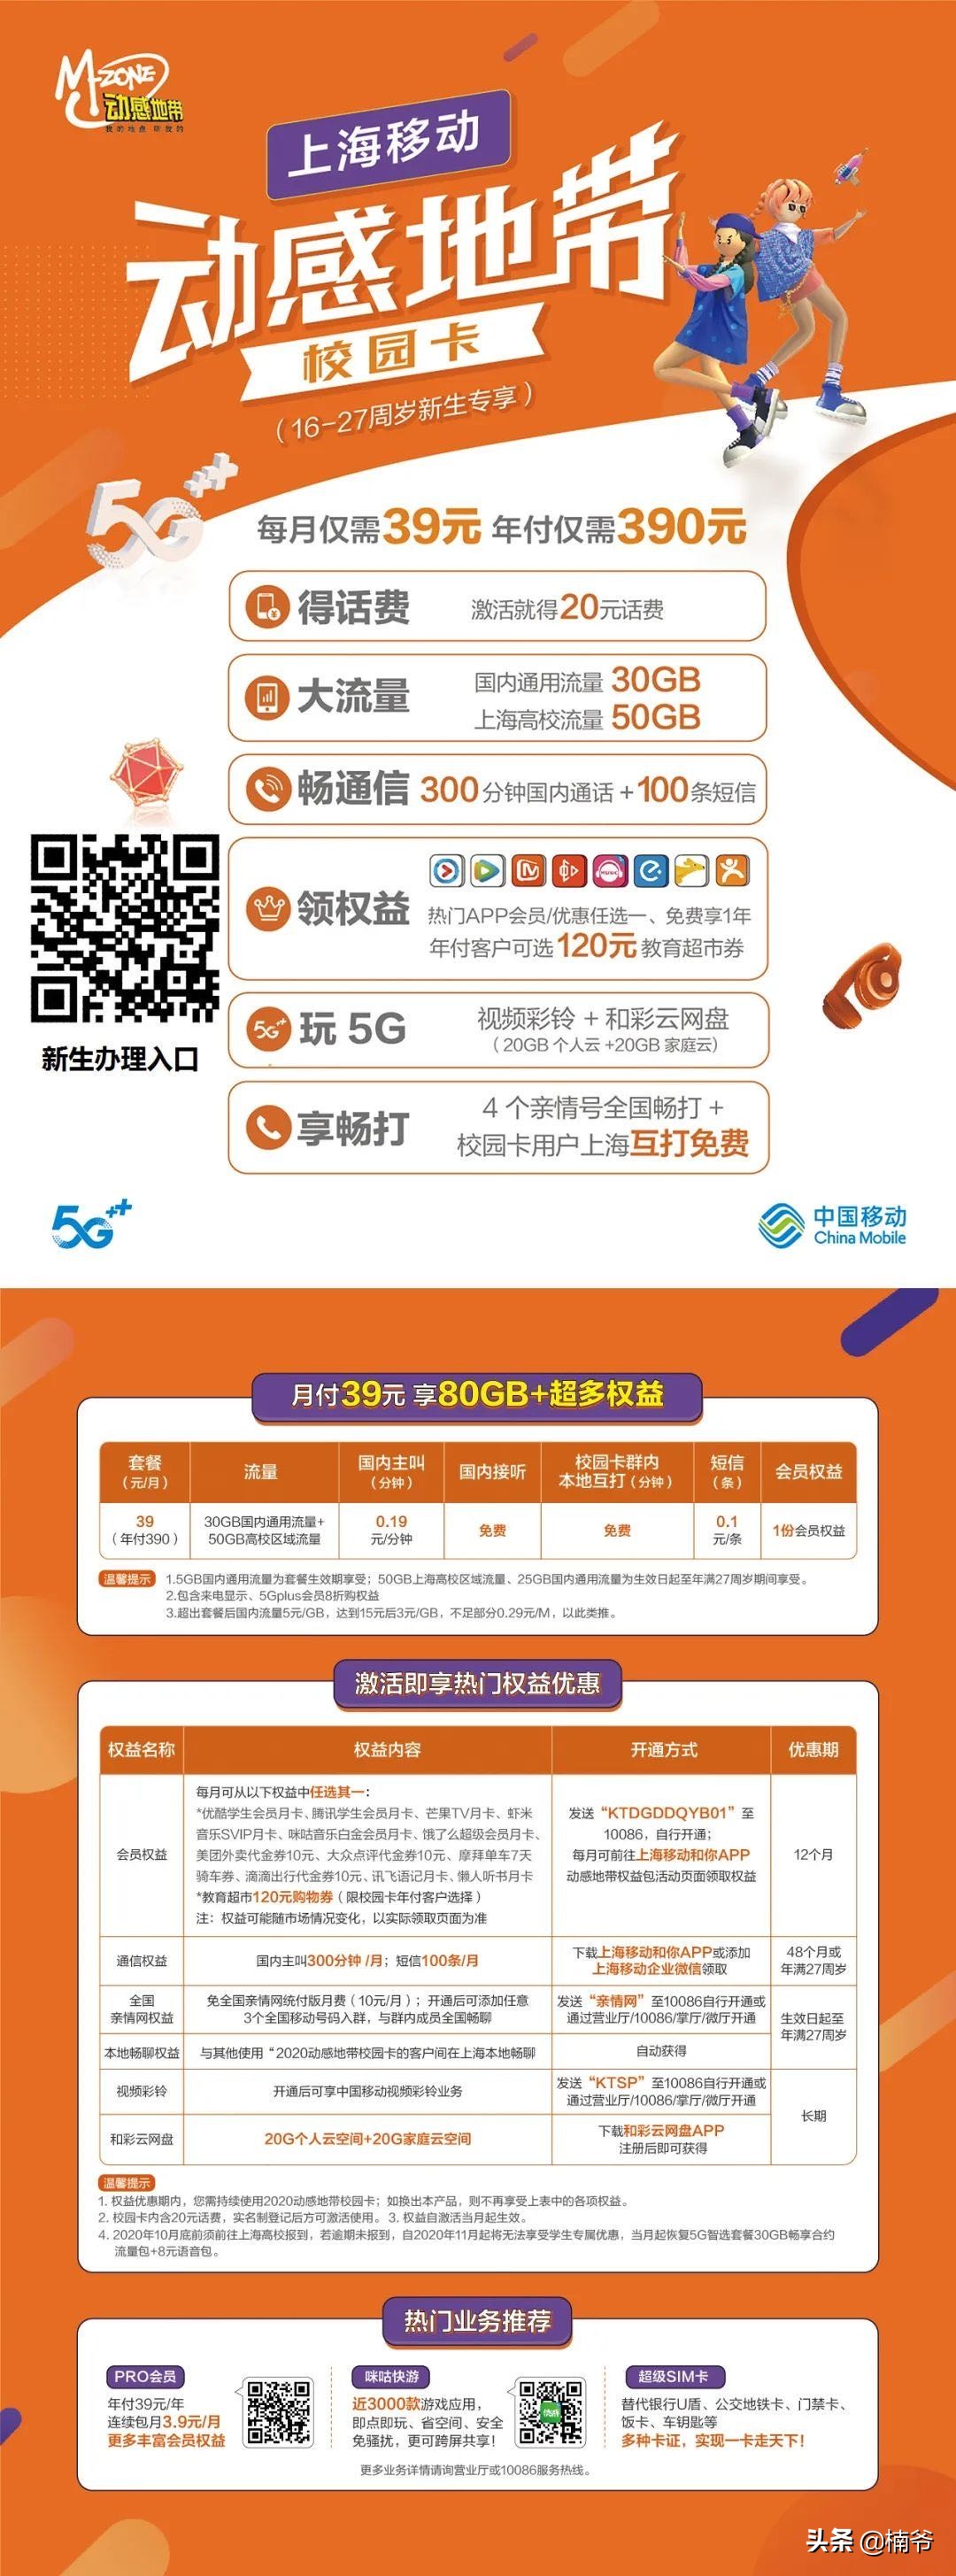 39块钱80GB的上海移动学生专用套餐来啦